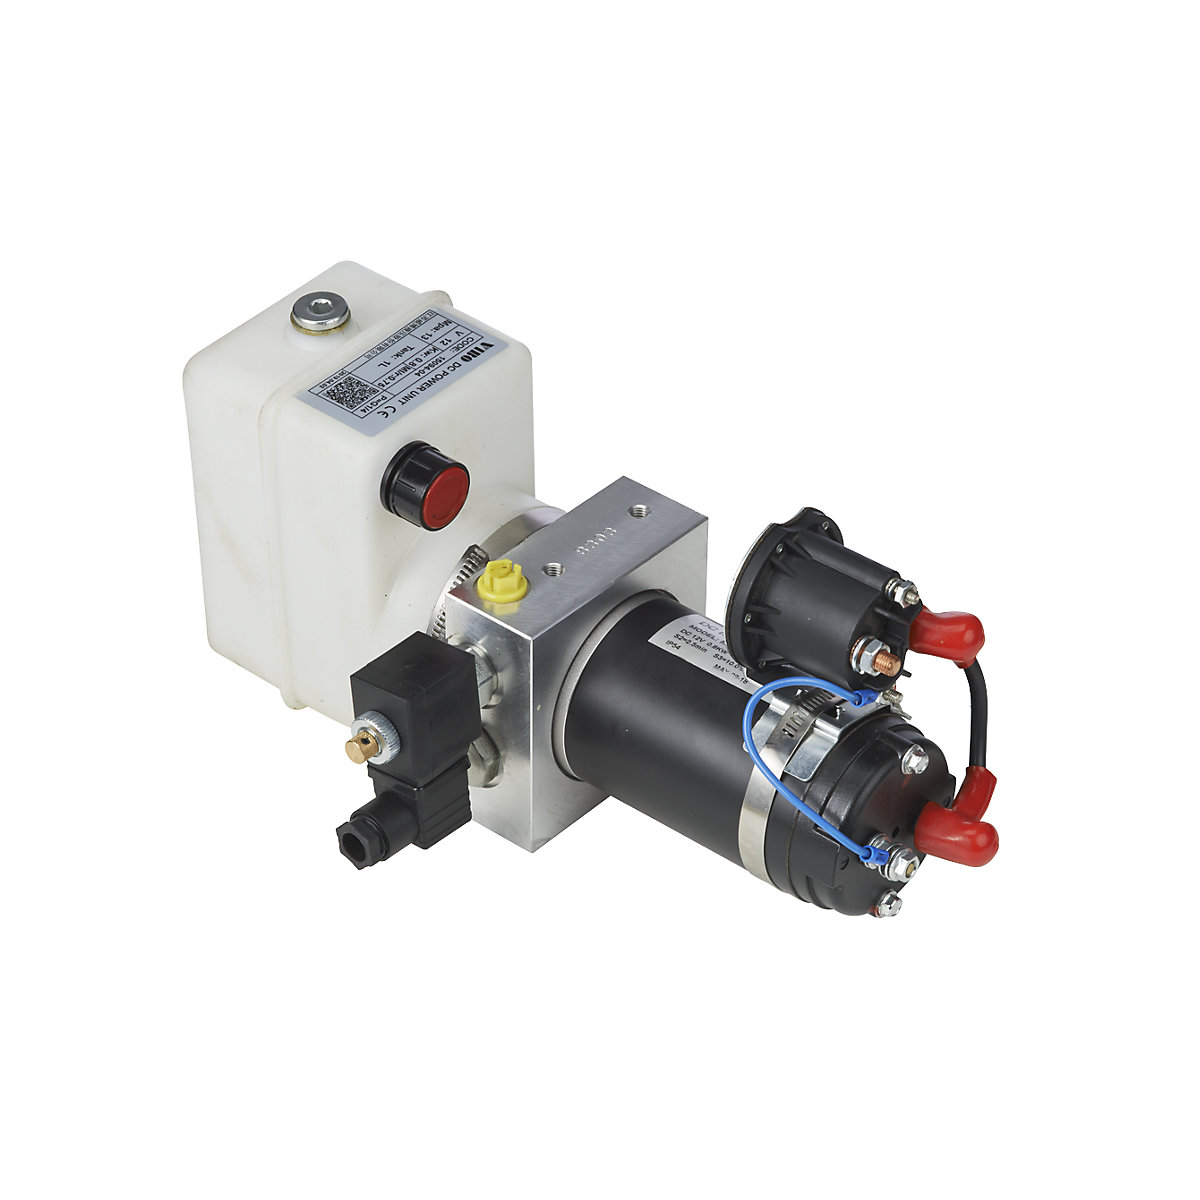 Hydraulic pump, electric